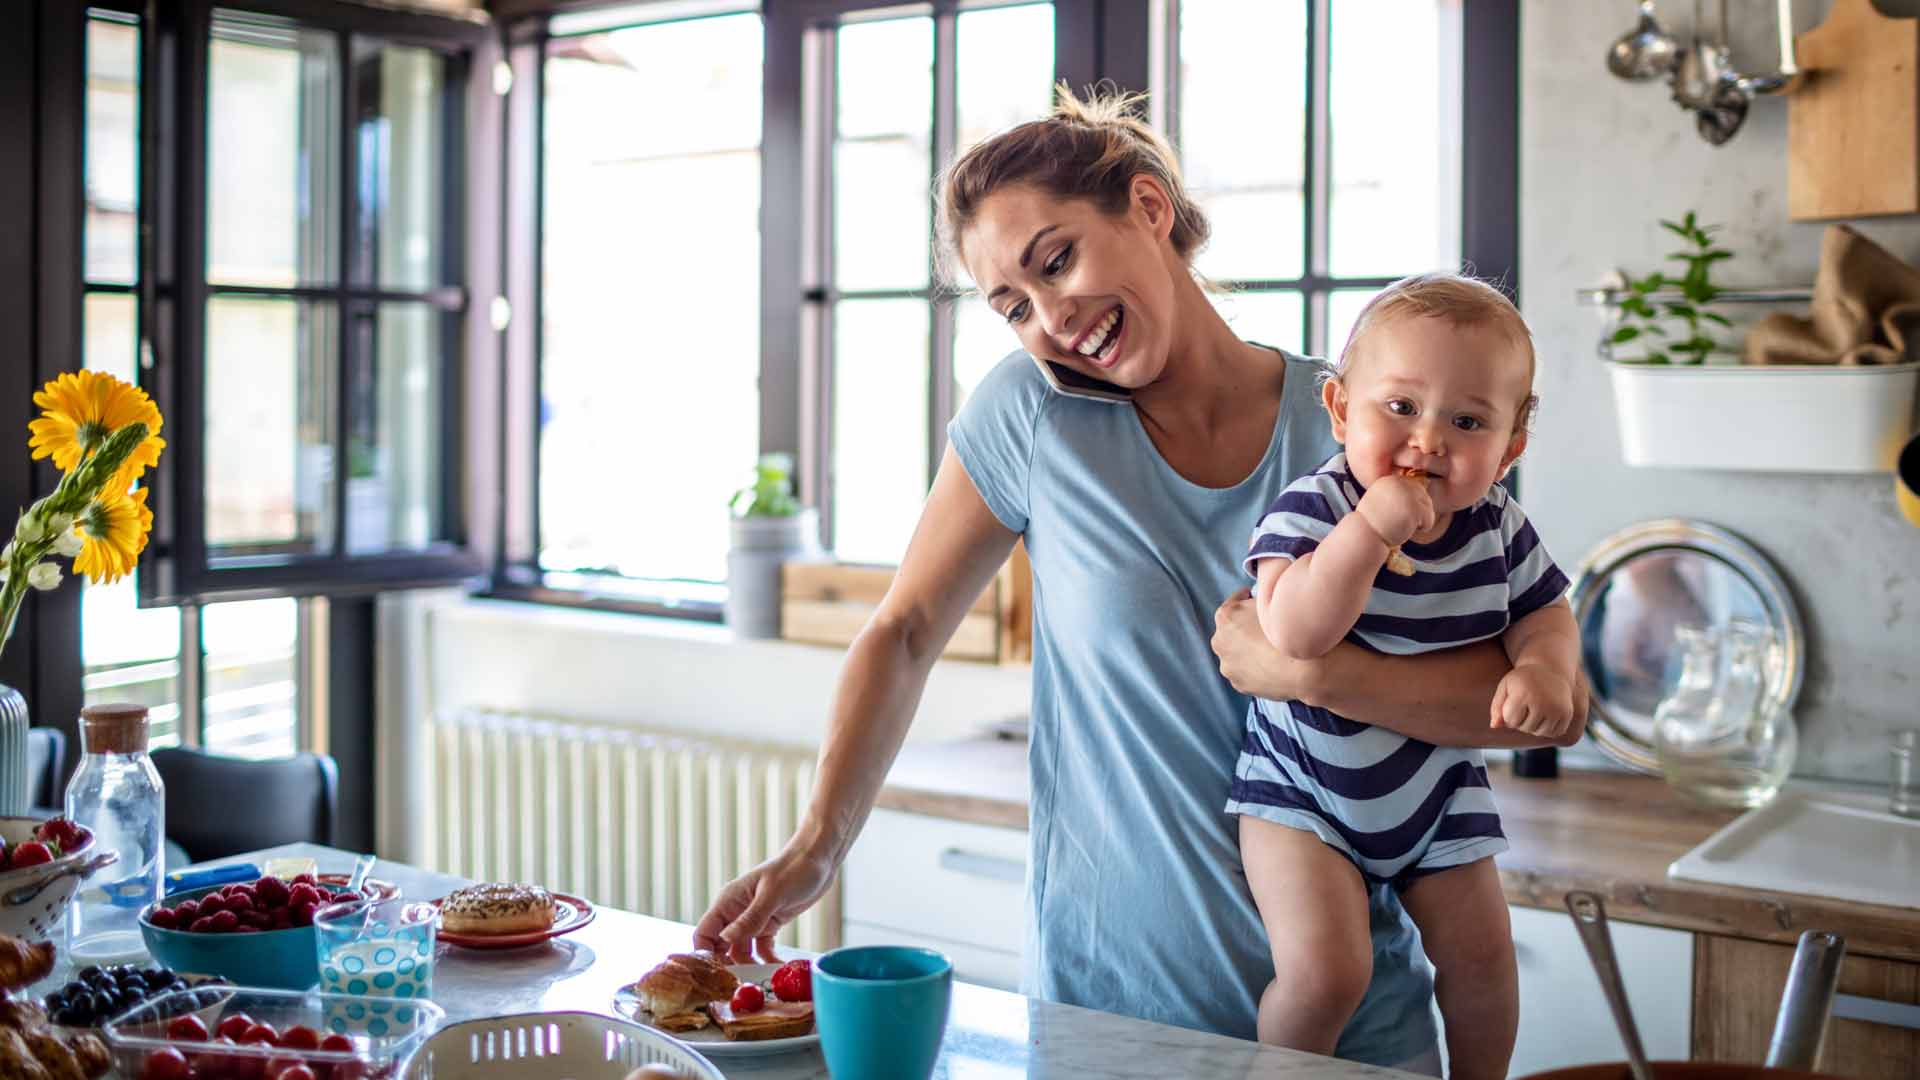 Frau mit Kleinkind auf dem Arm steht telefonierend in der Küche.